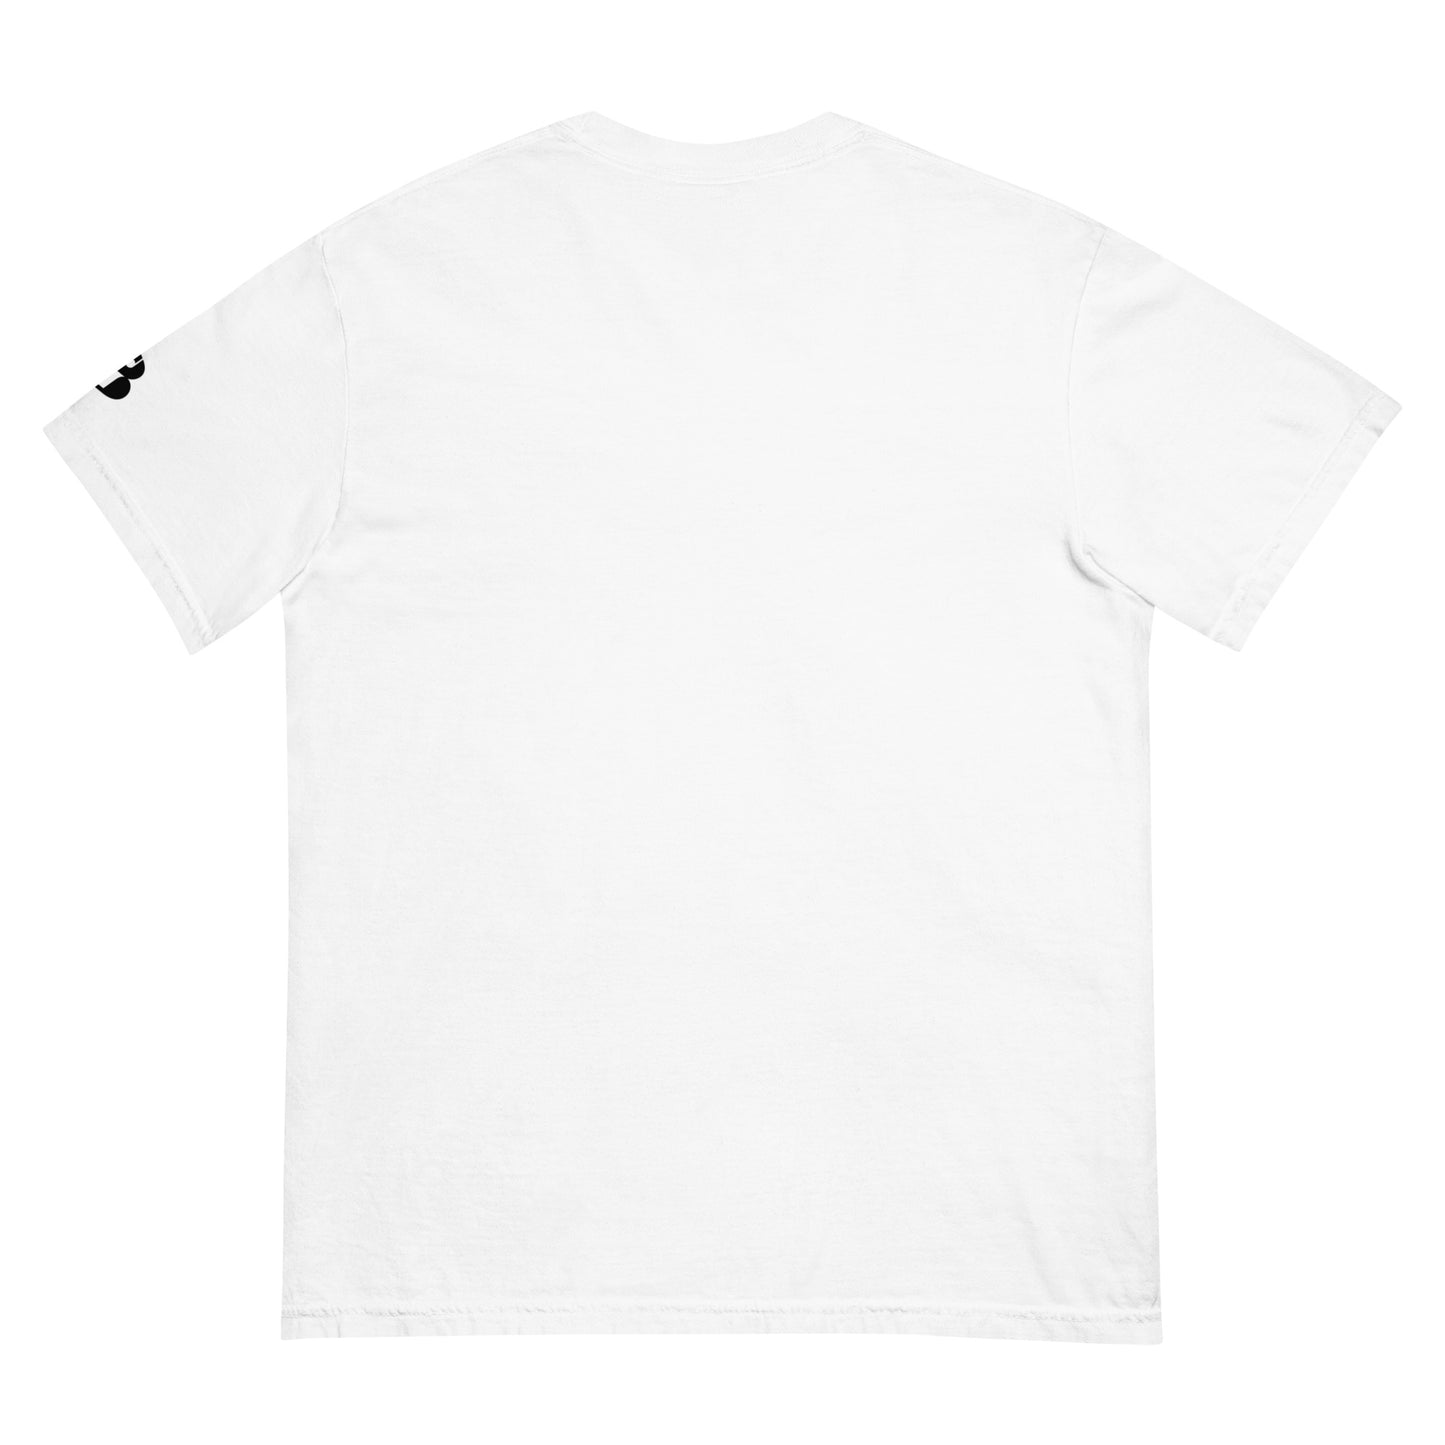 Men’s “Don’t Sleep” garment-dyed heavyweight t-shirt